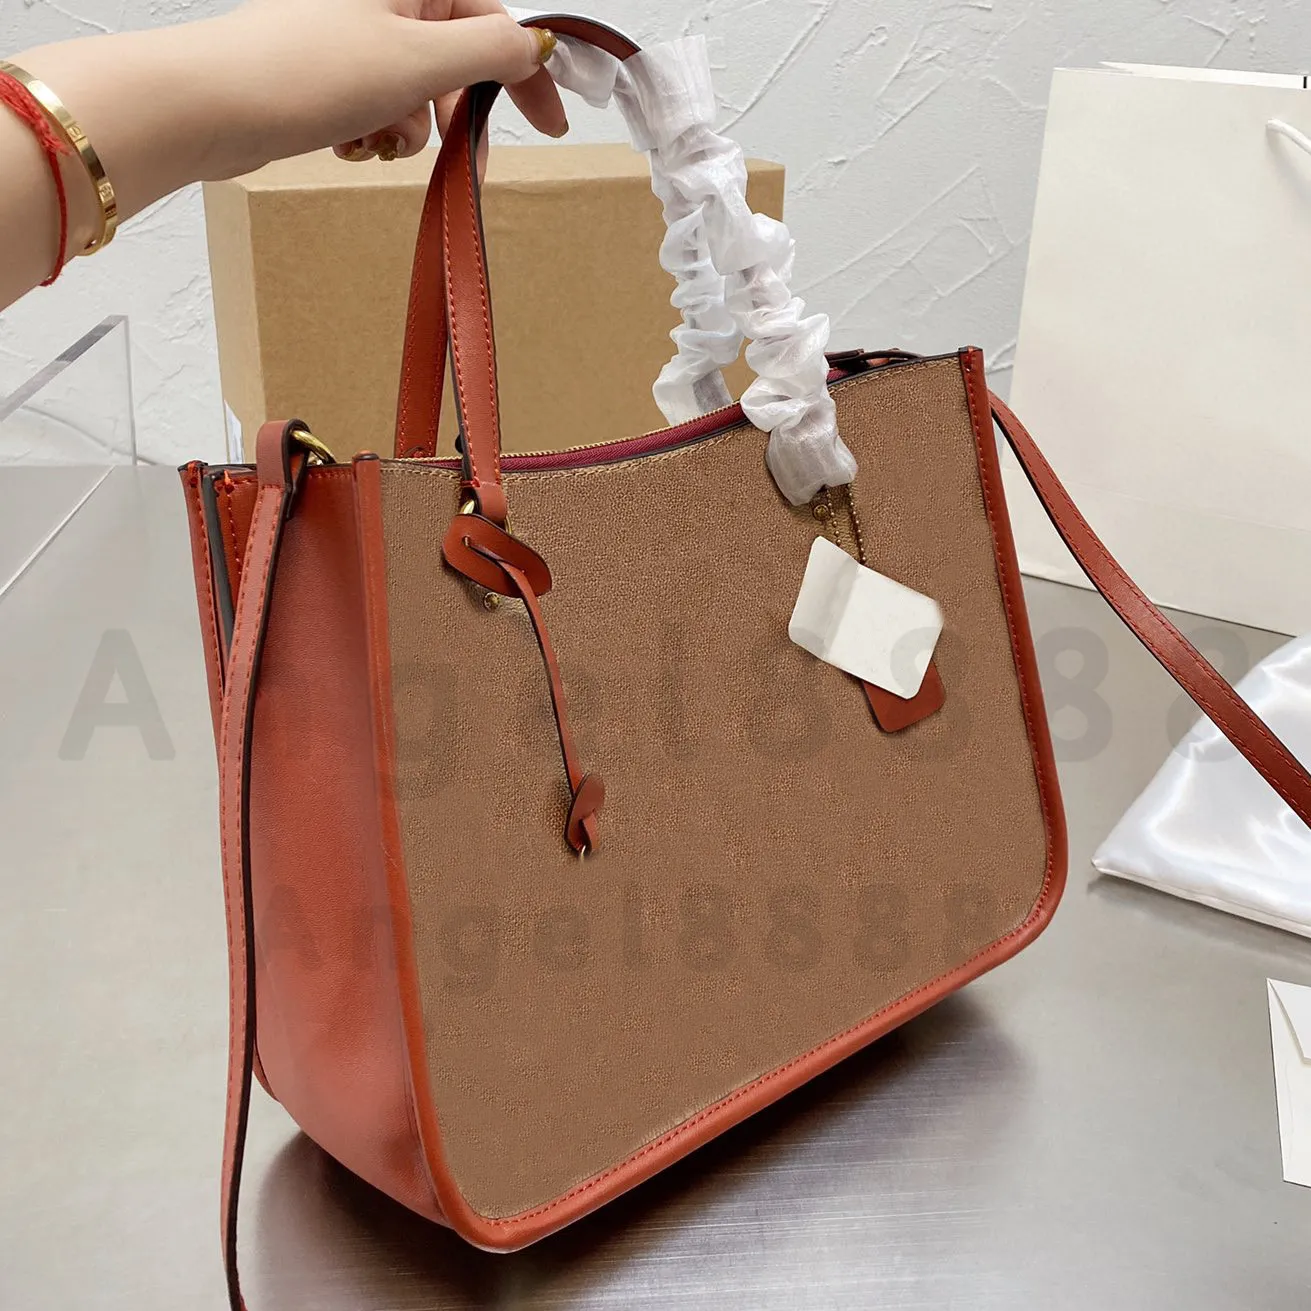 Luxury Designer Brand Fashion ombro Bolsas mais recentes bolsas de compras bolsa de bolsa feminina bolsa bolsa metal